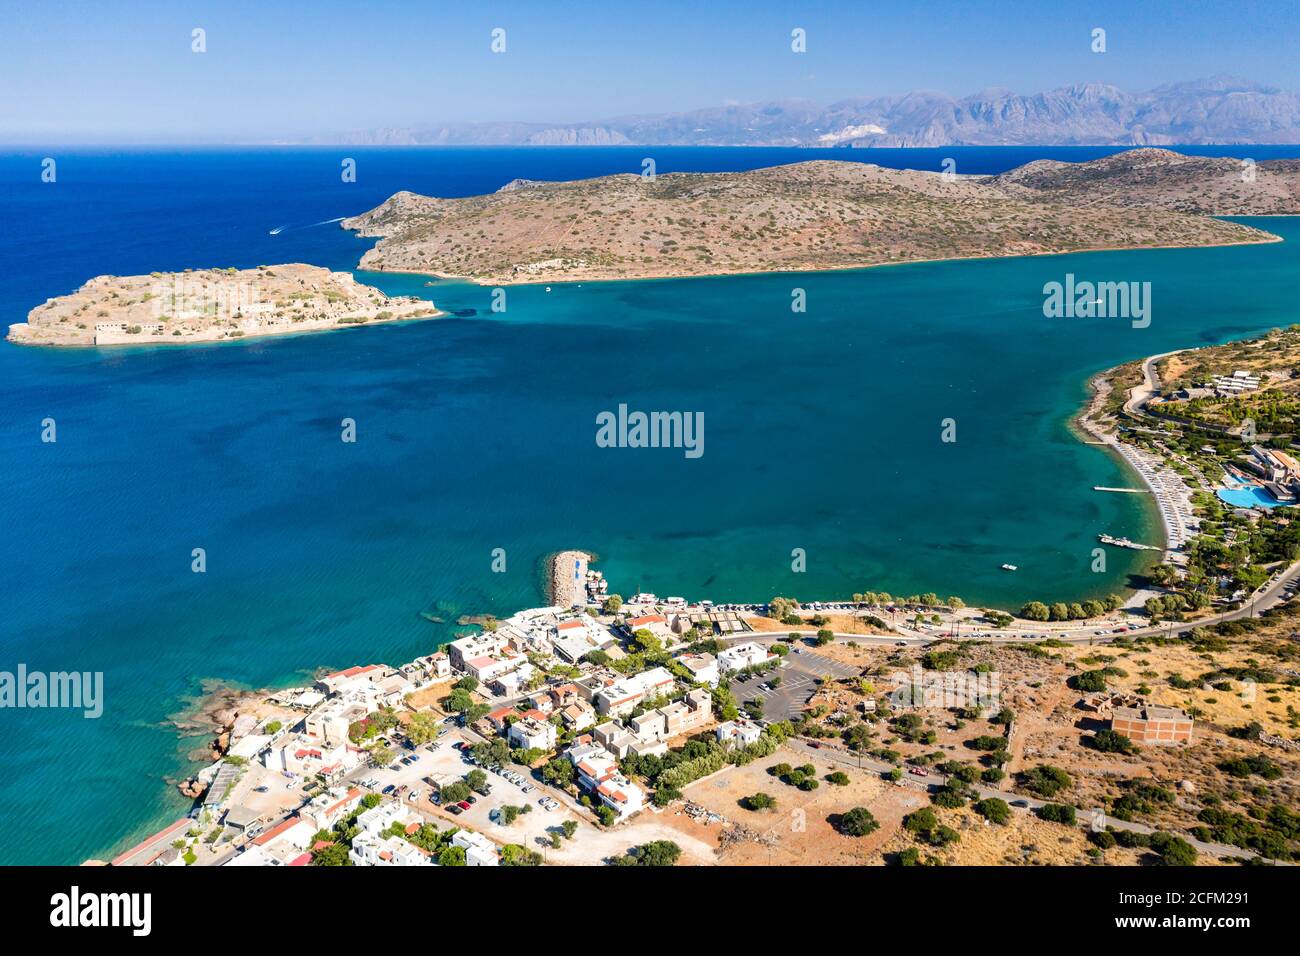 Vue aérienne de la forteresse médiévale de l'île de Spinalonga et de la ville de Plaka avec des mers cristallines (Crète, Grèce) Banque D'Images